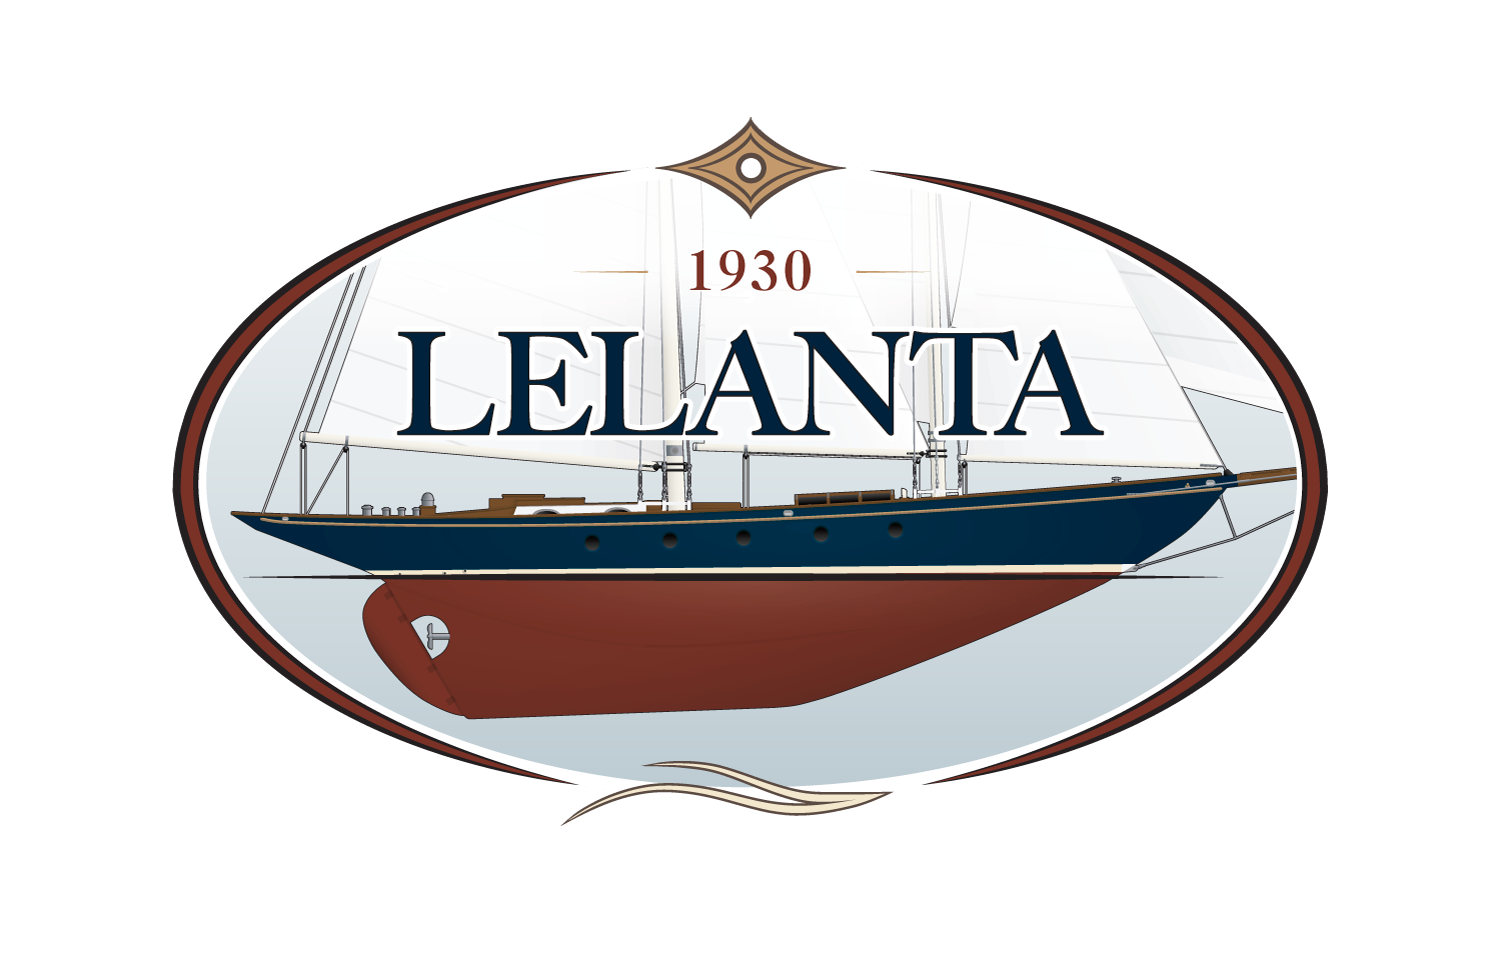 Lelanta Sailing Yacht